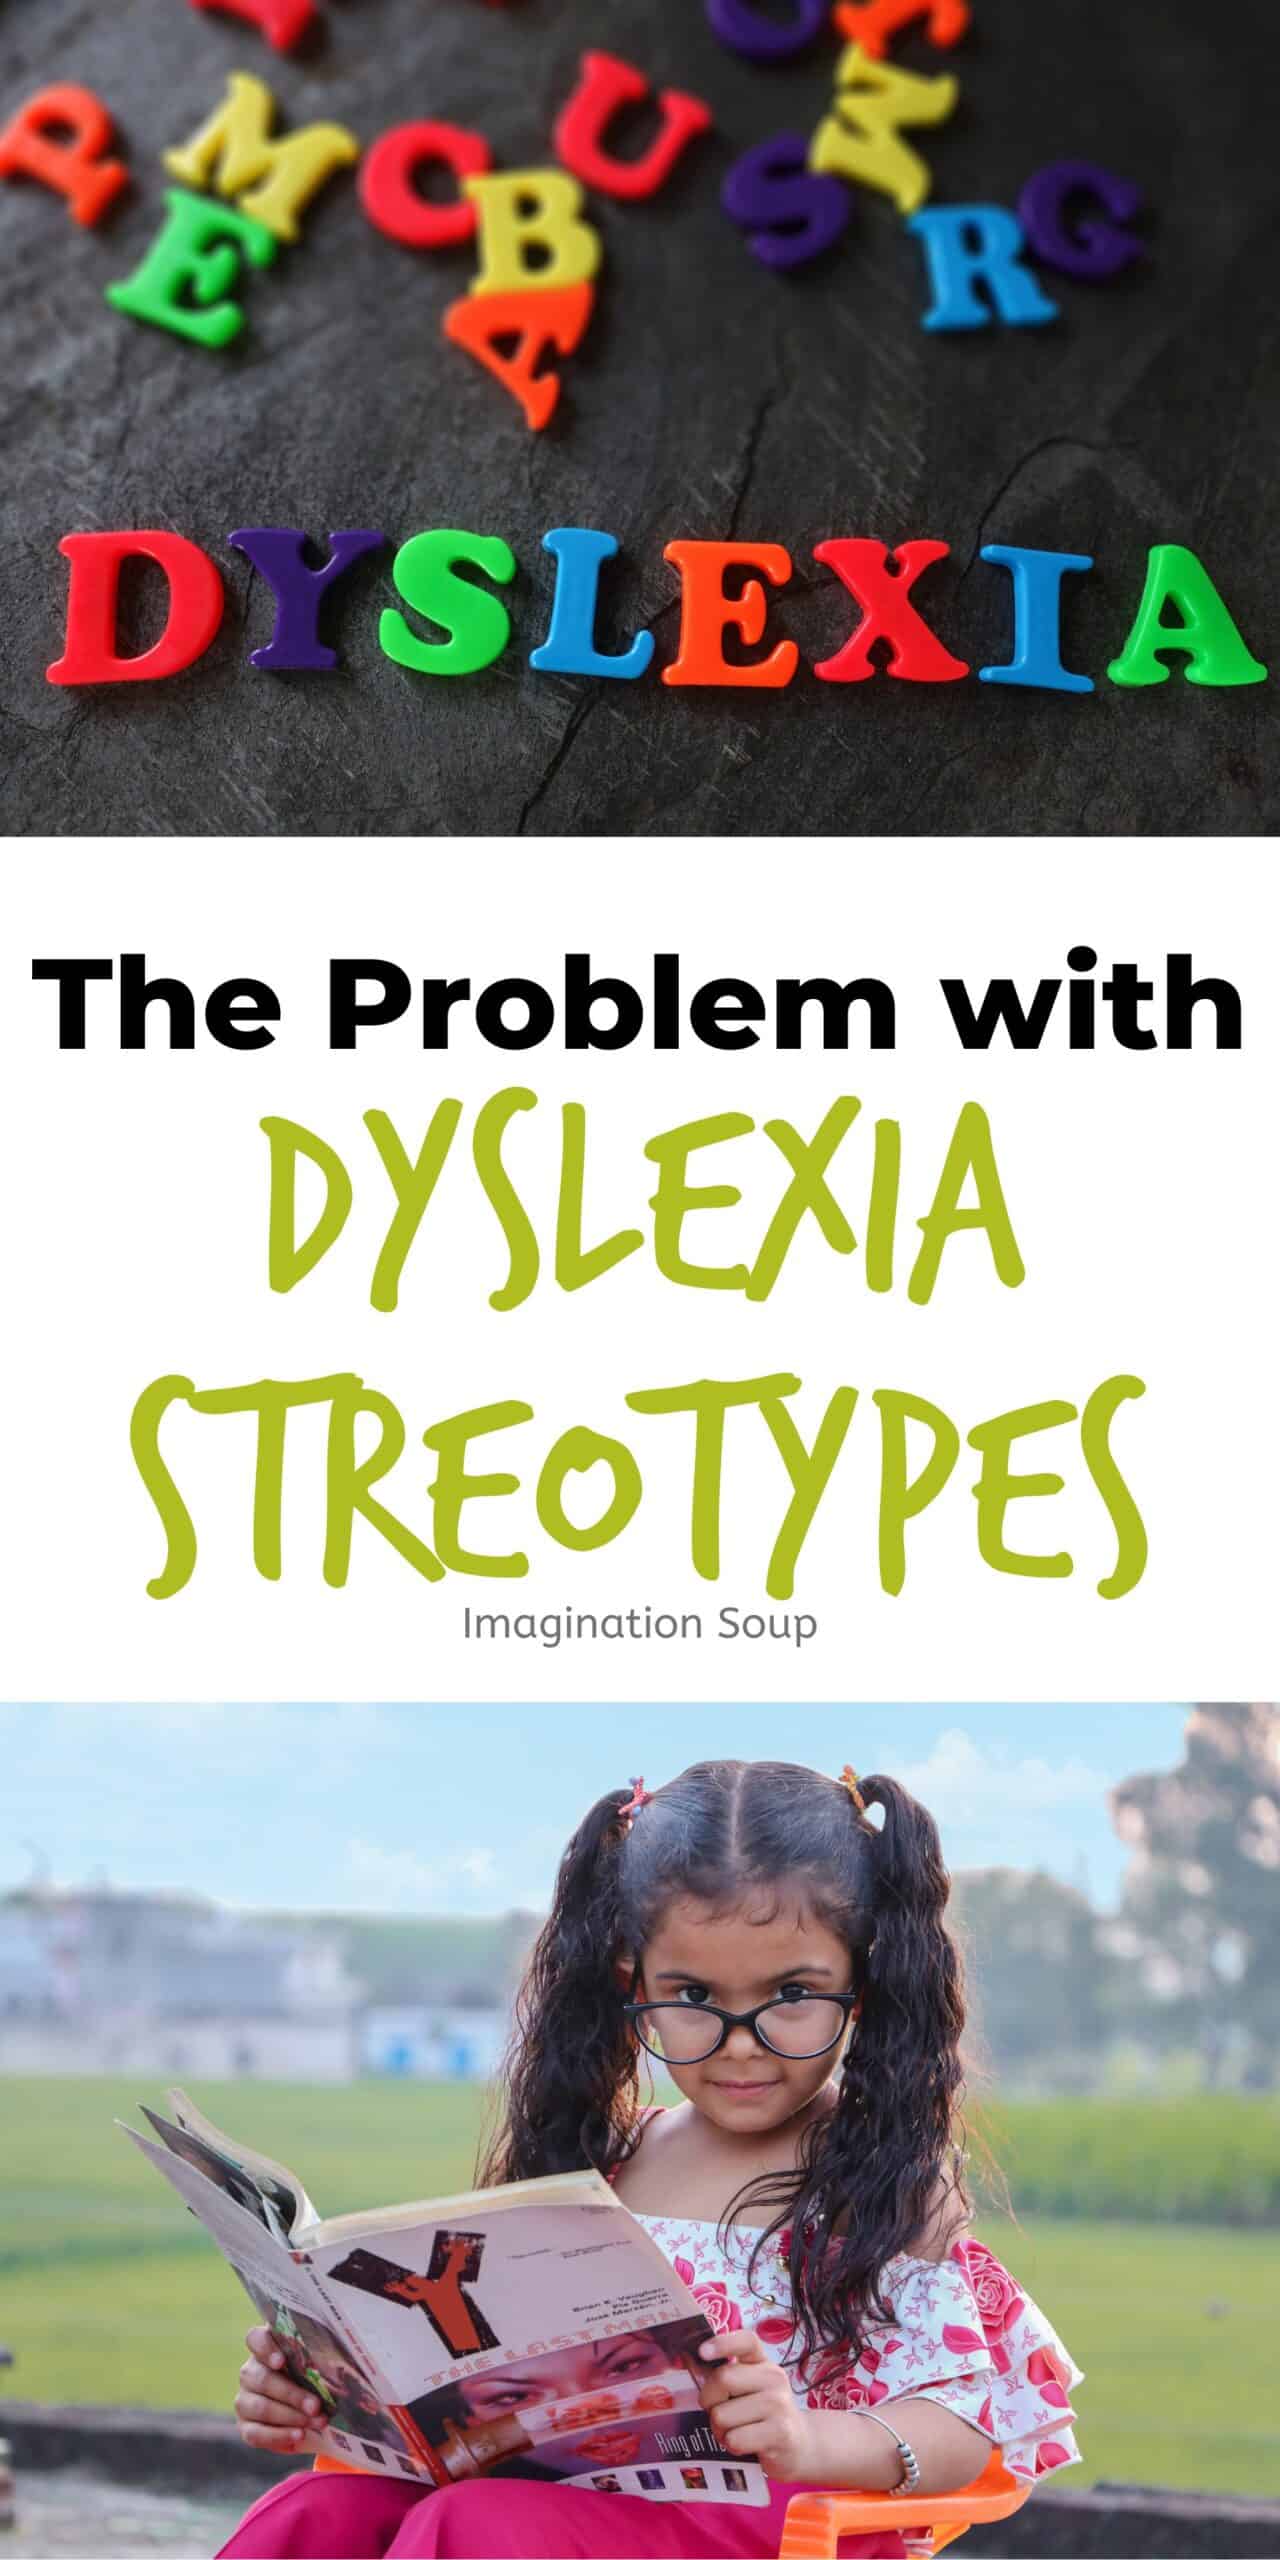 dyslexia stereotypes 